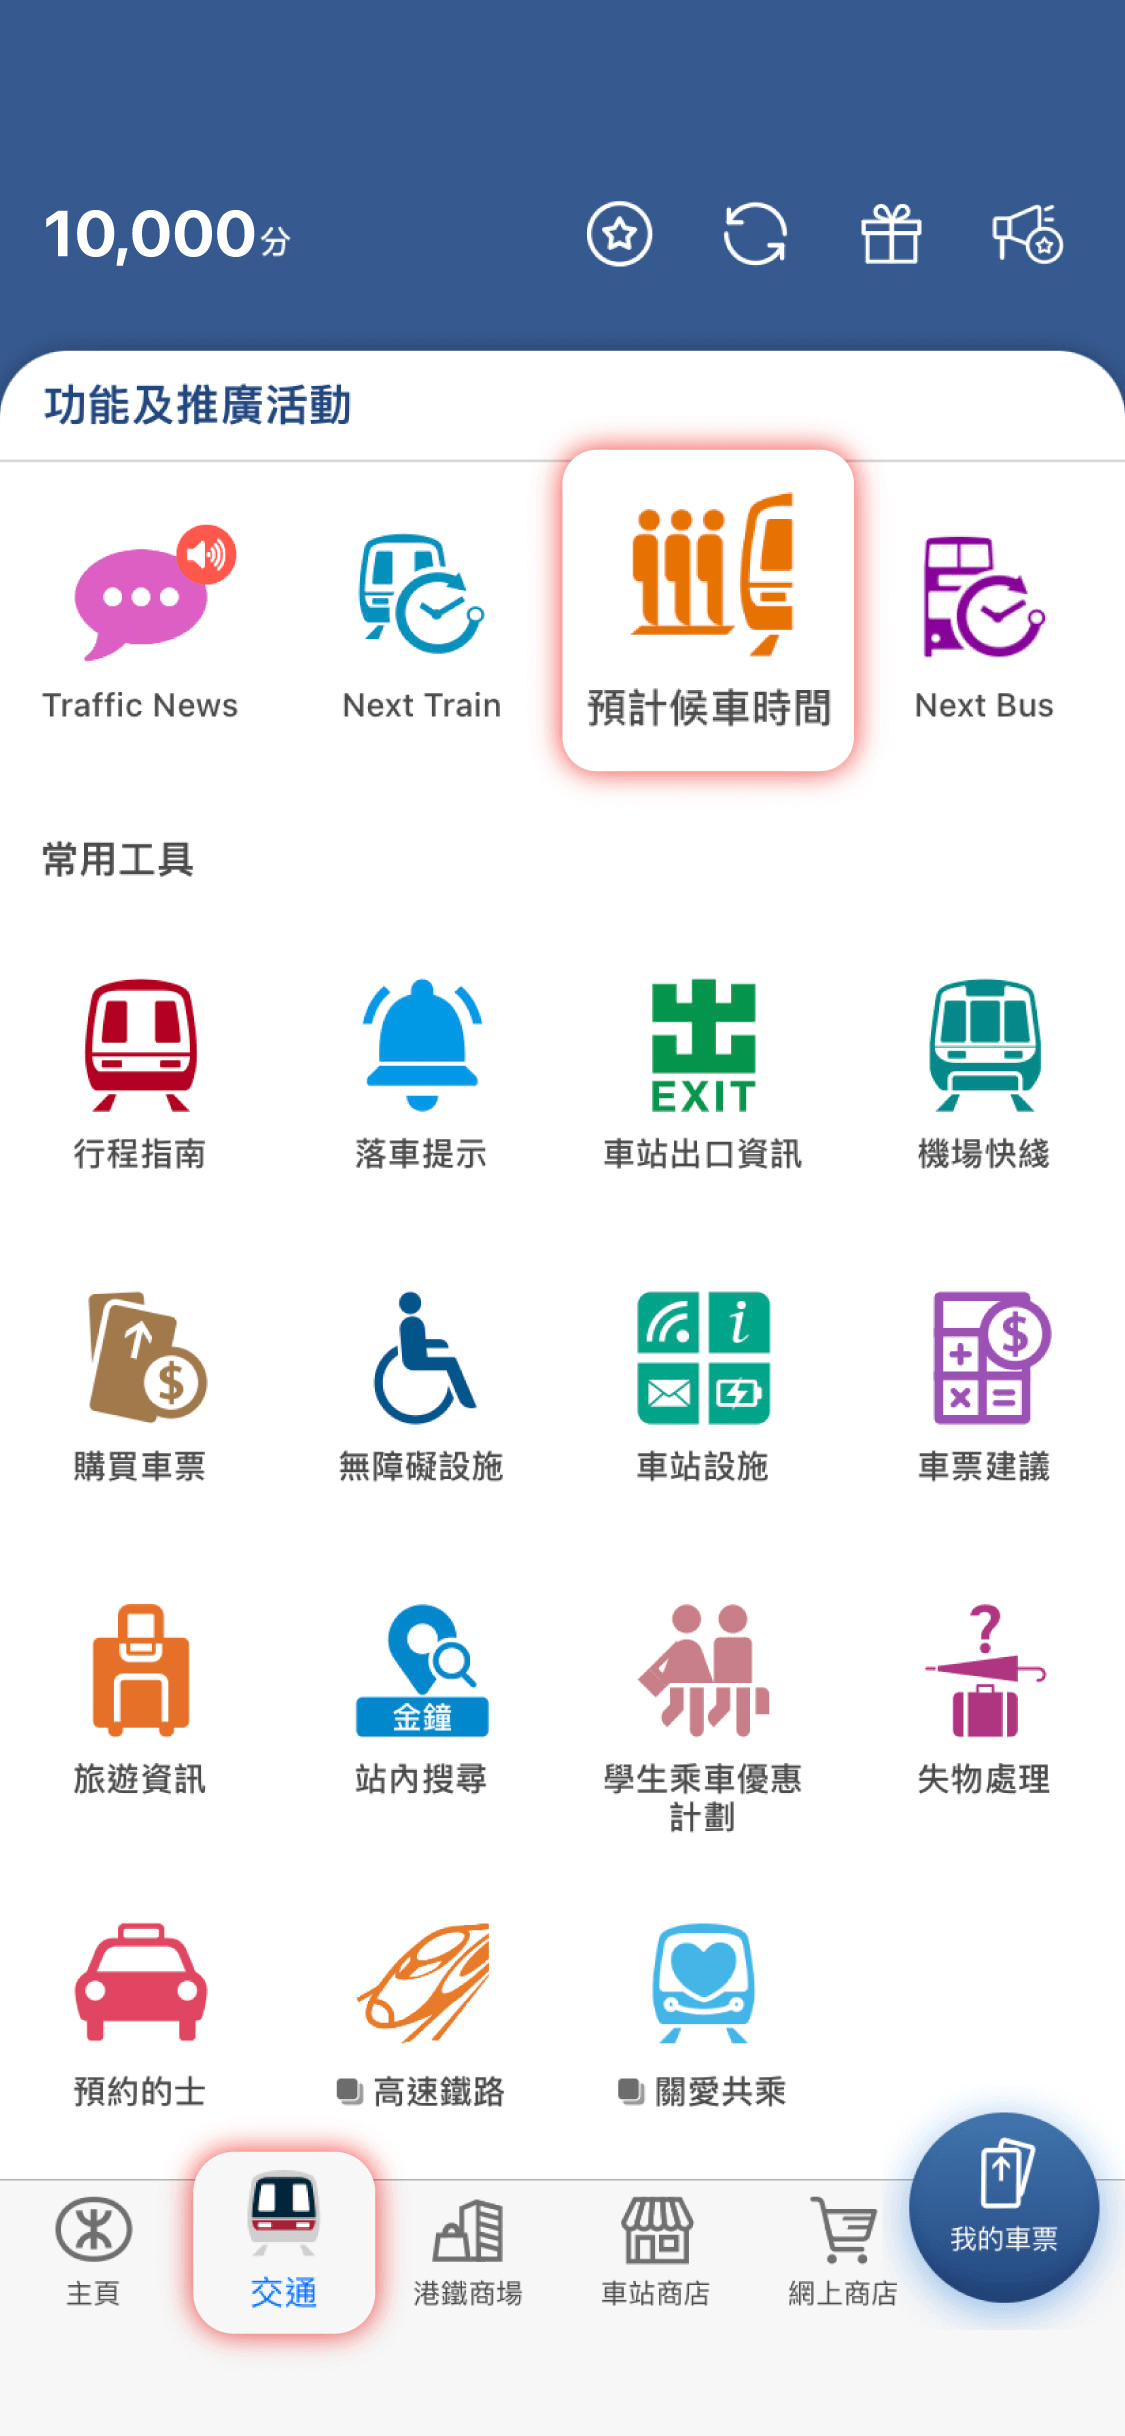 於MTR Mobile「交通」頁面按此圖像進入「預計候車時間」功能 